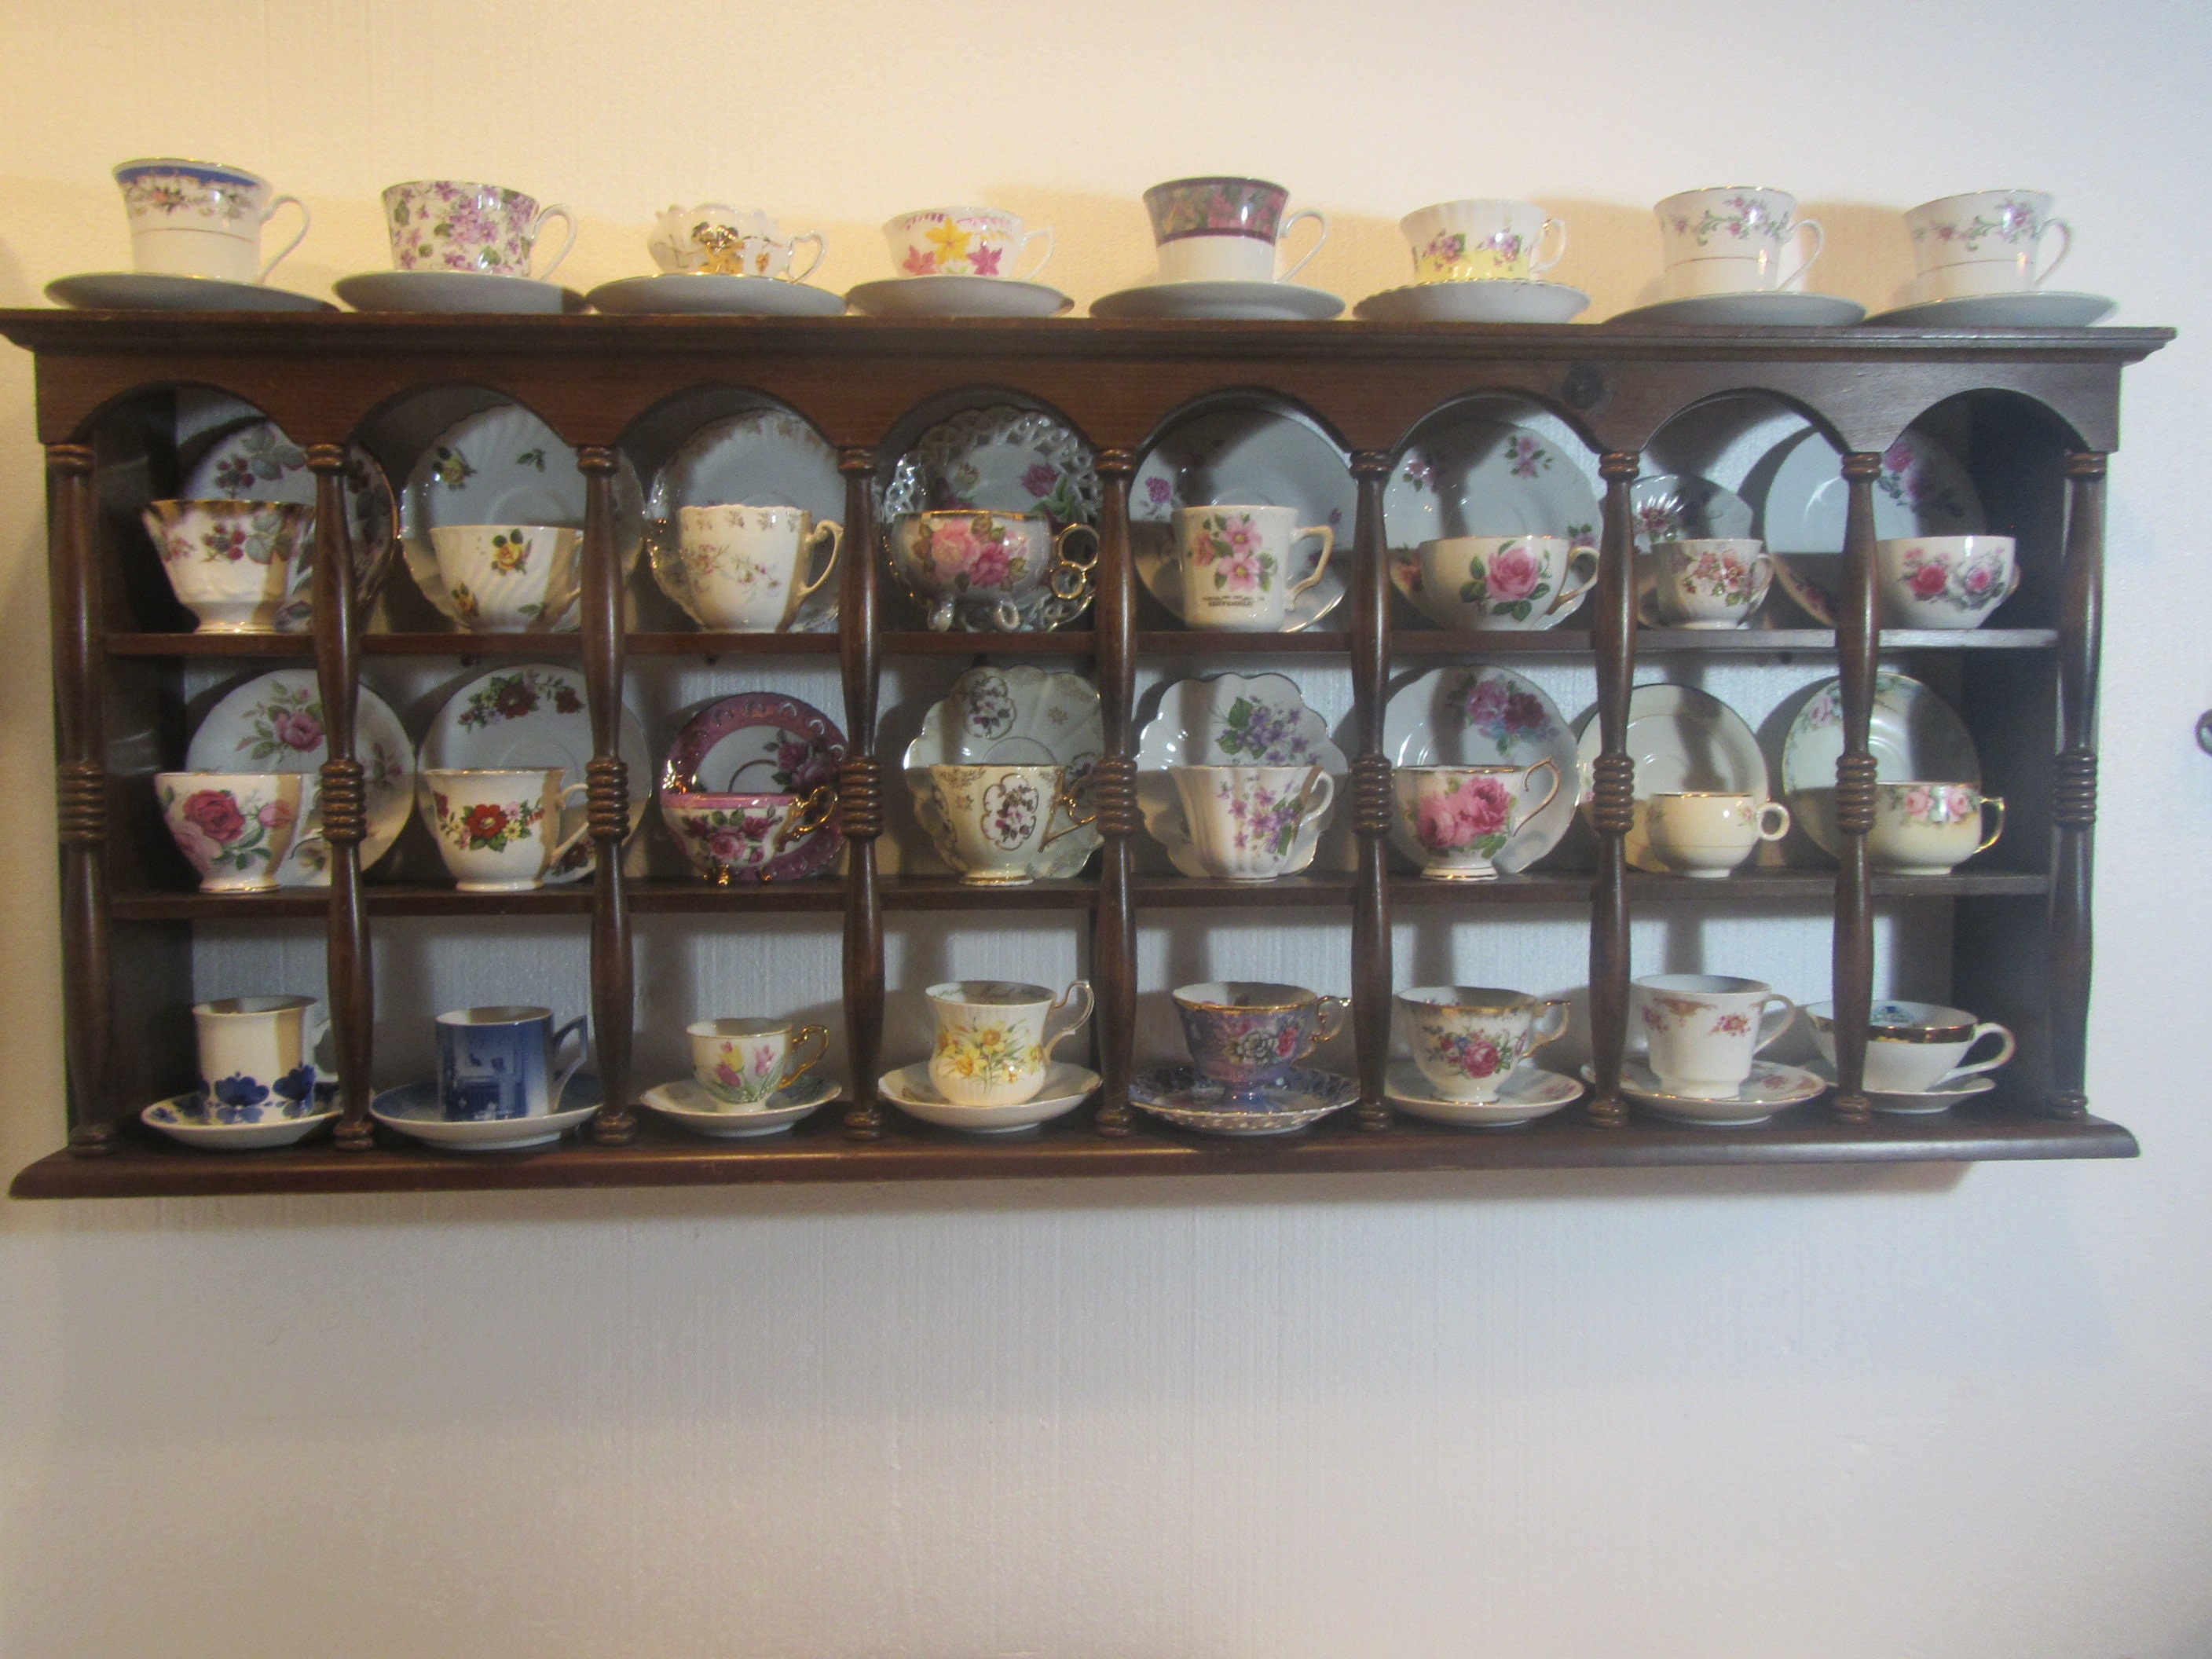 HOHIYA Tea Cup and Saucer Display Stand Teacup Holder 6 Pcs